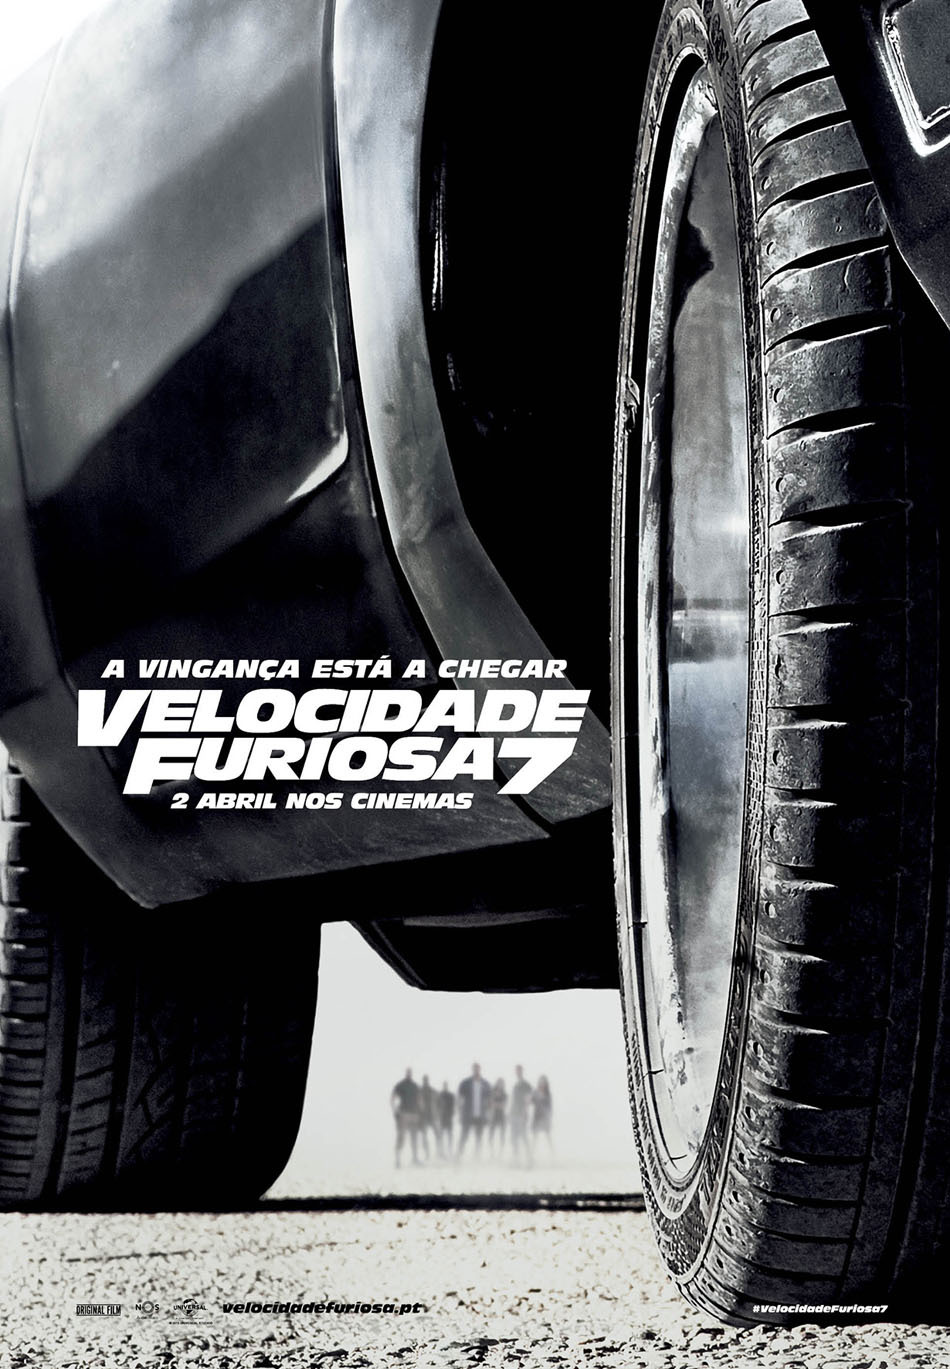 Velocidade Furiosa 7 é o filme de 2015 com mais erros - Atualidade - SAPO  Mag